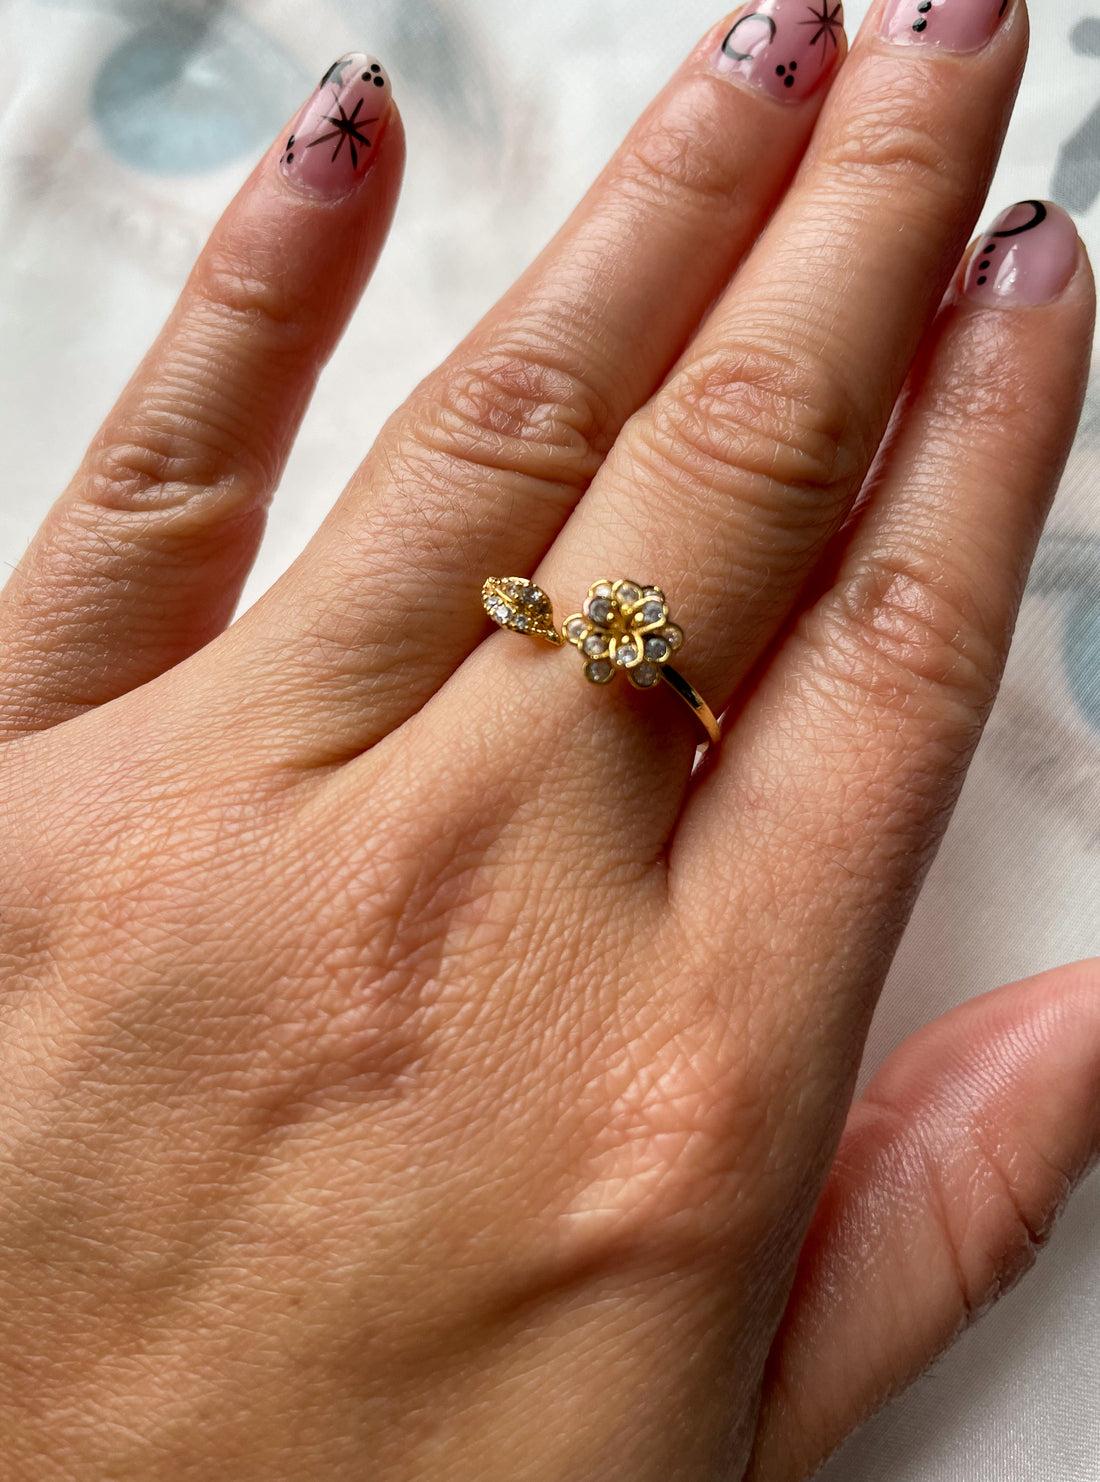 Encanto Flower Gold Dipped Ring